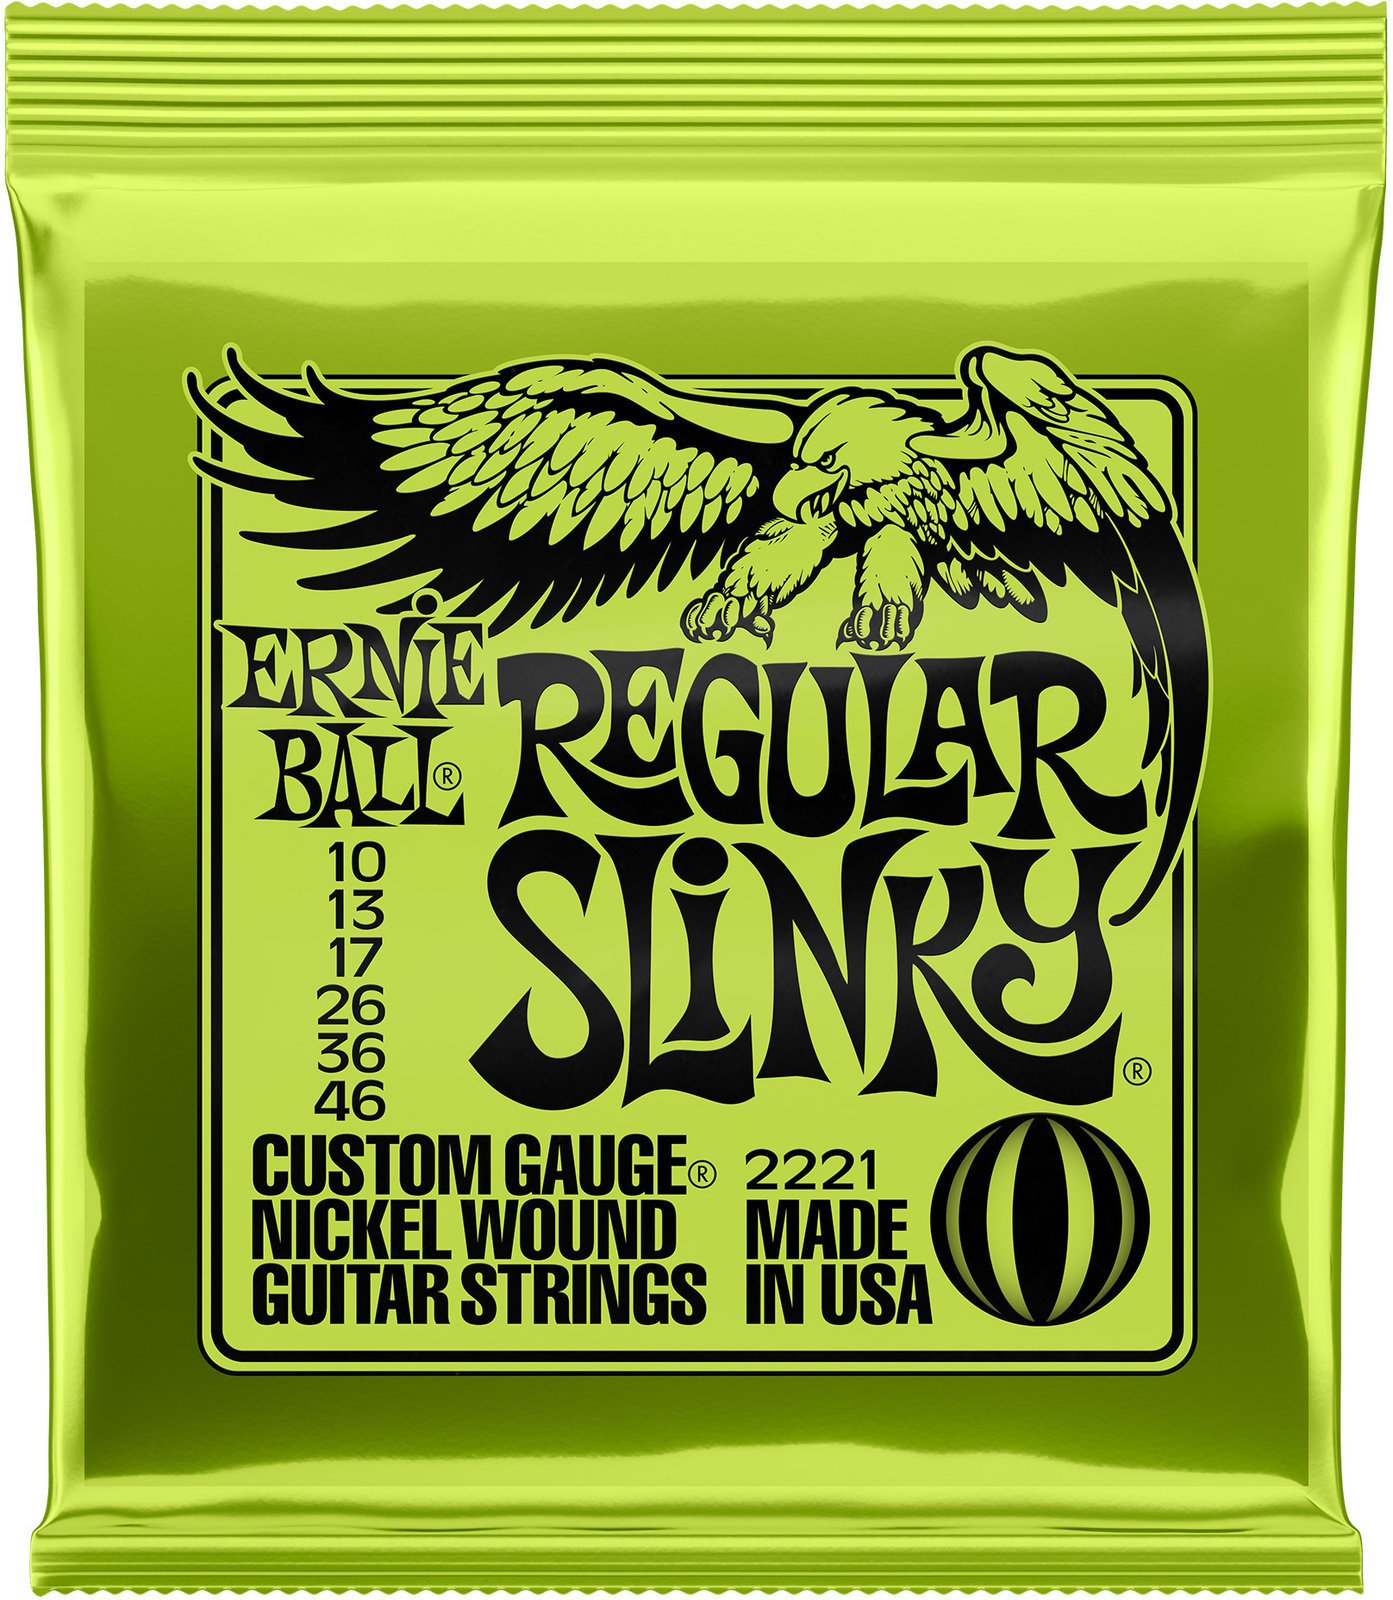 E-guitar strings Ernie Ball 2221 Regular Slinky